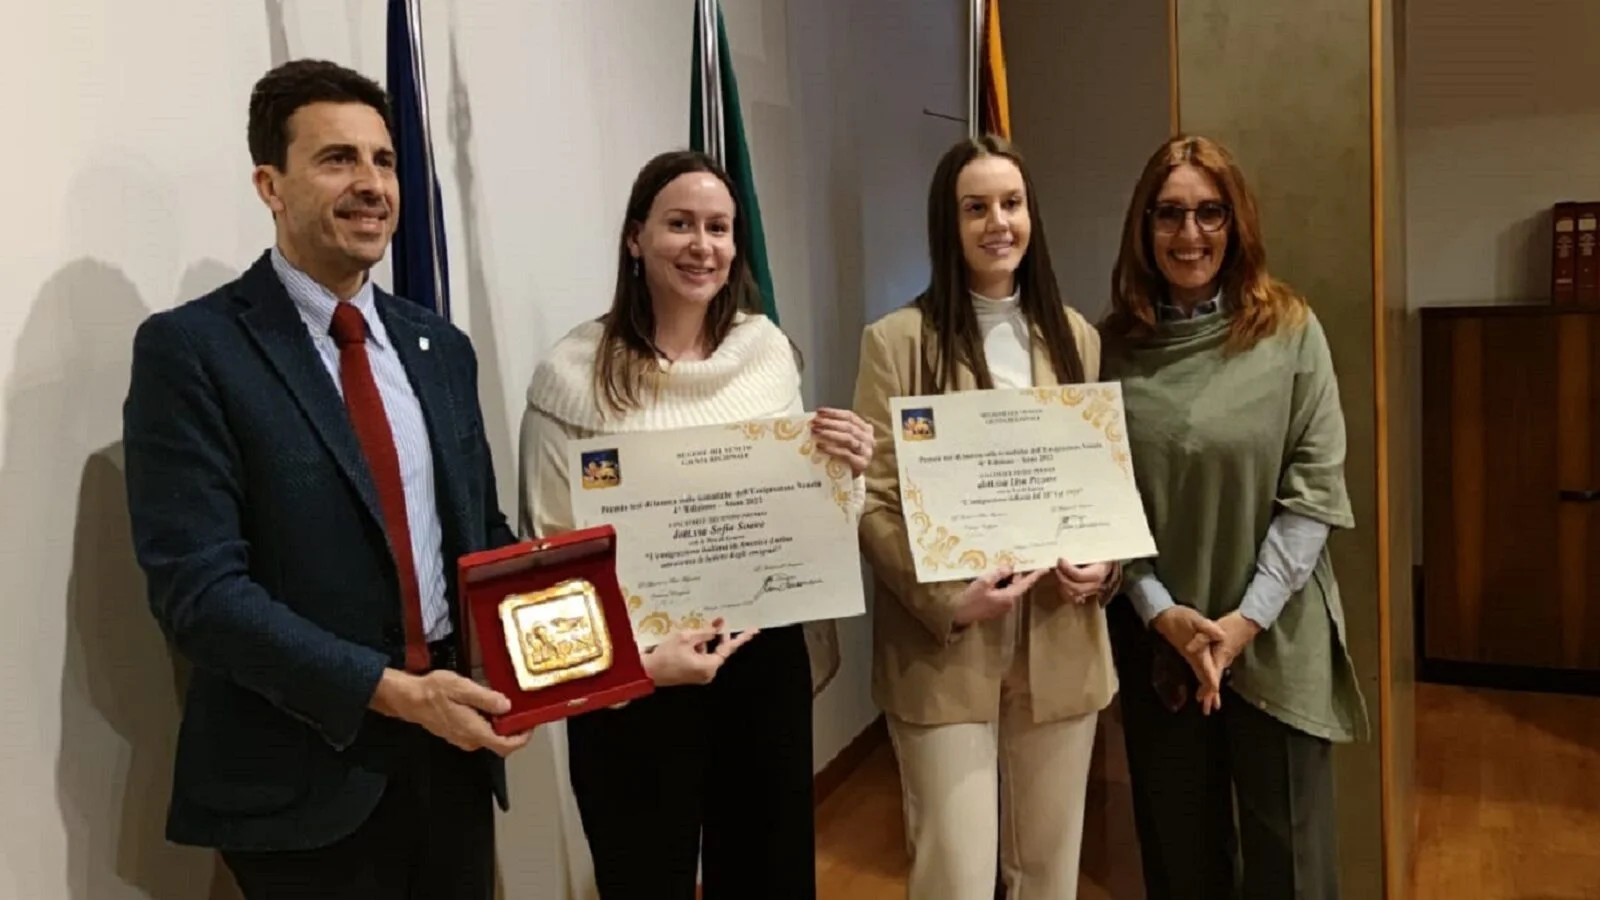 Gli assessori regionali Corazzari e Donazzan premiano le due migliori tesi di laurea sull'emigrazione veneta